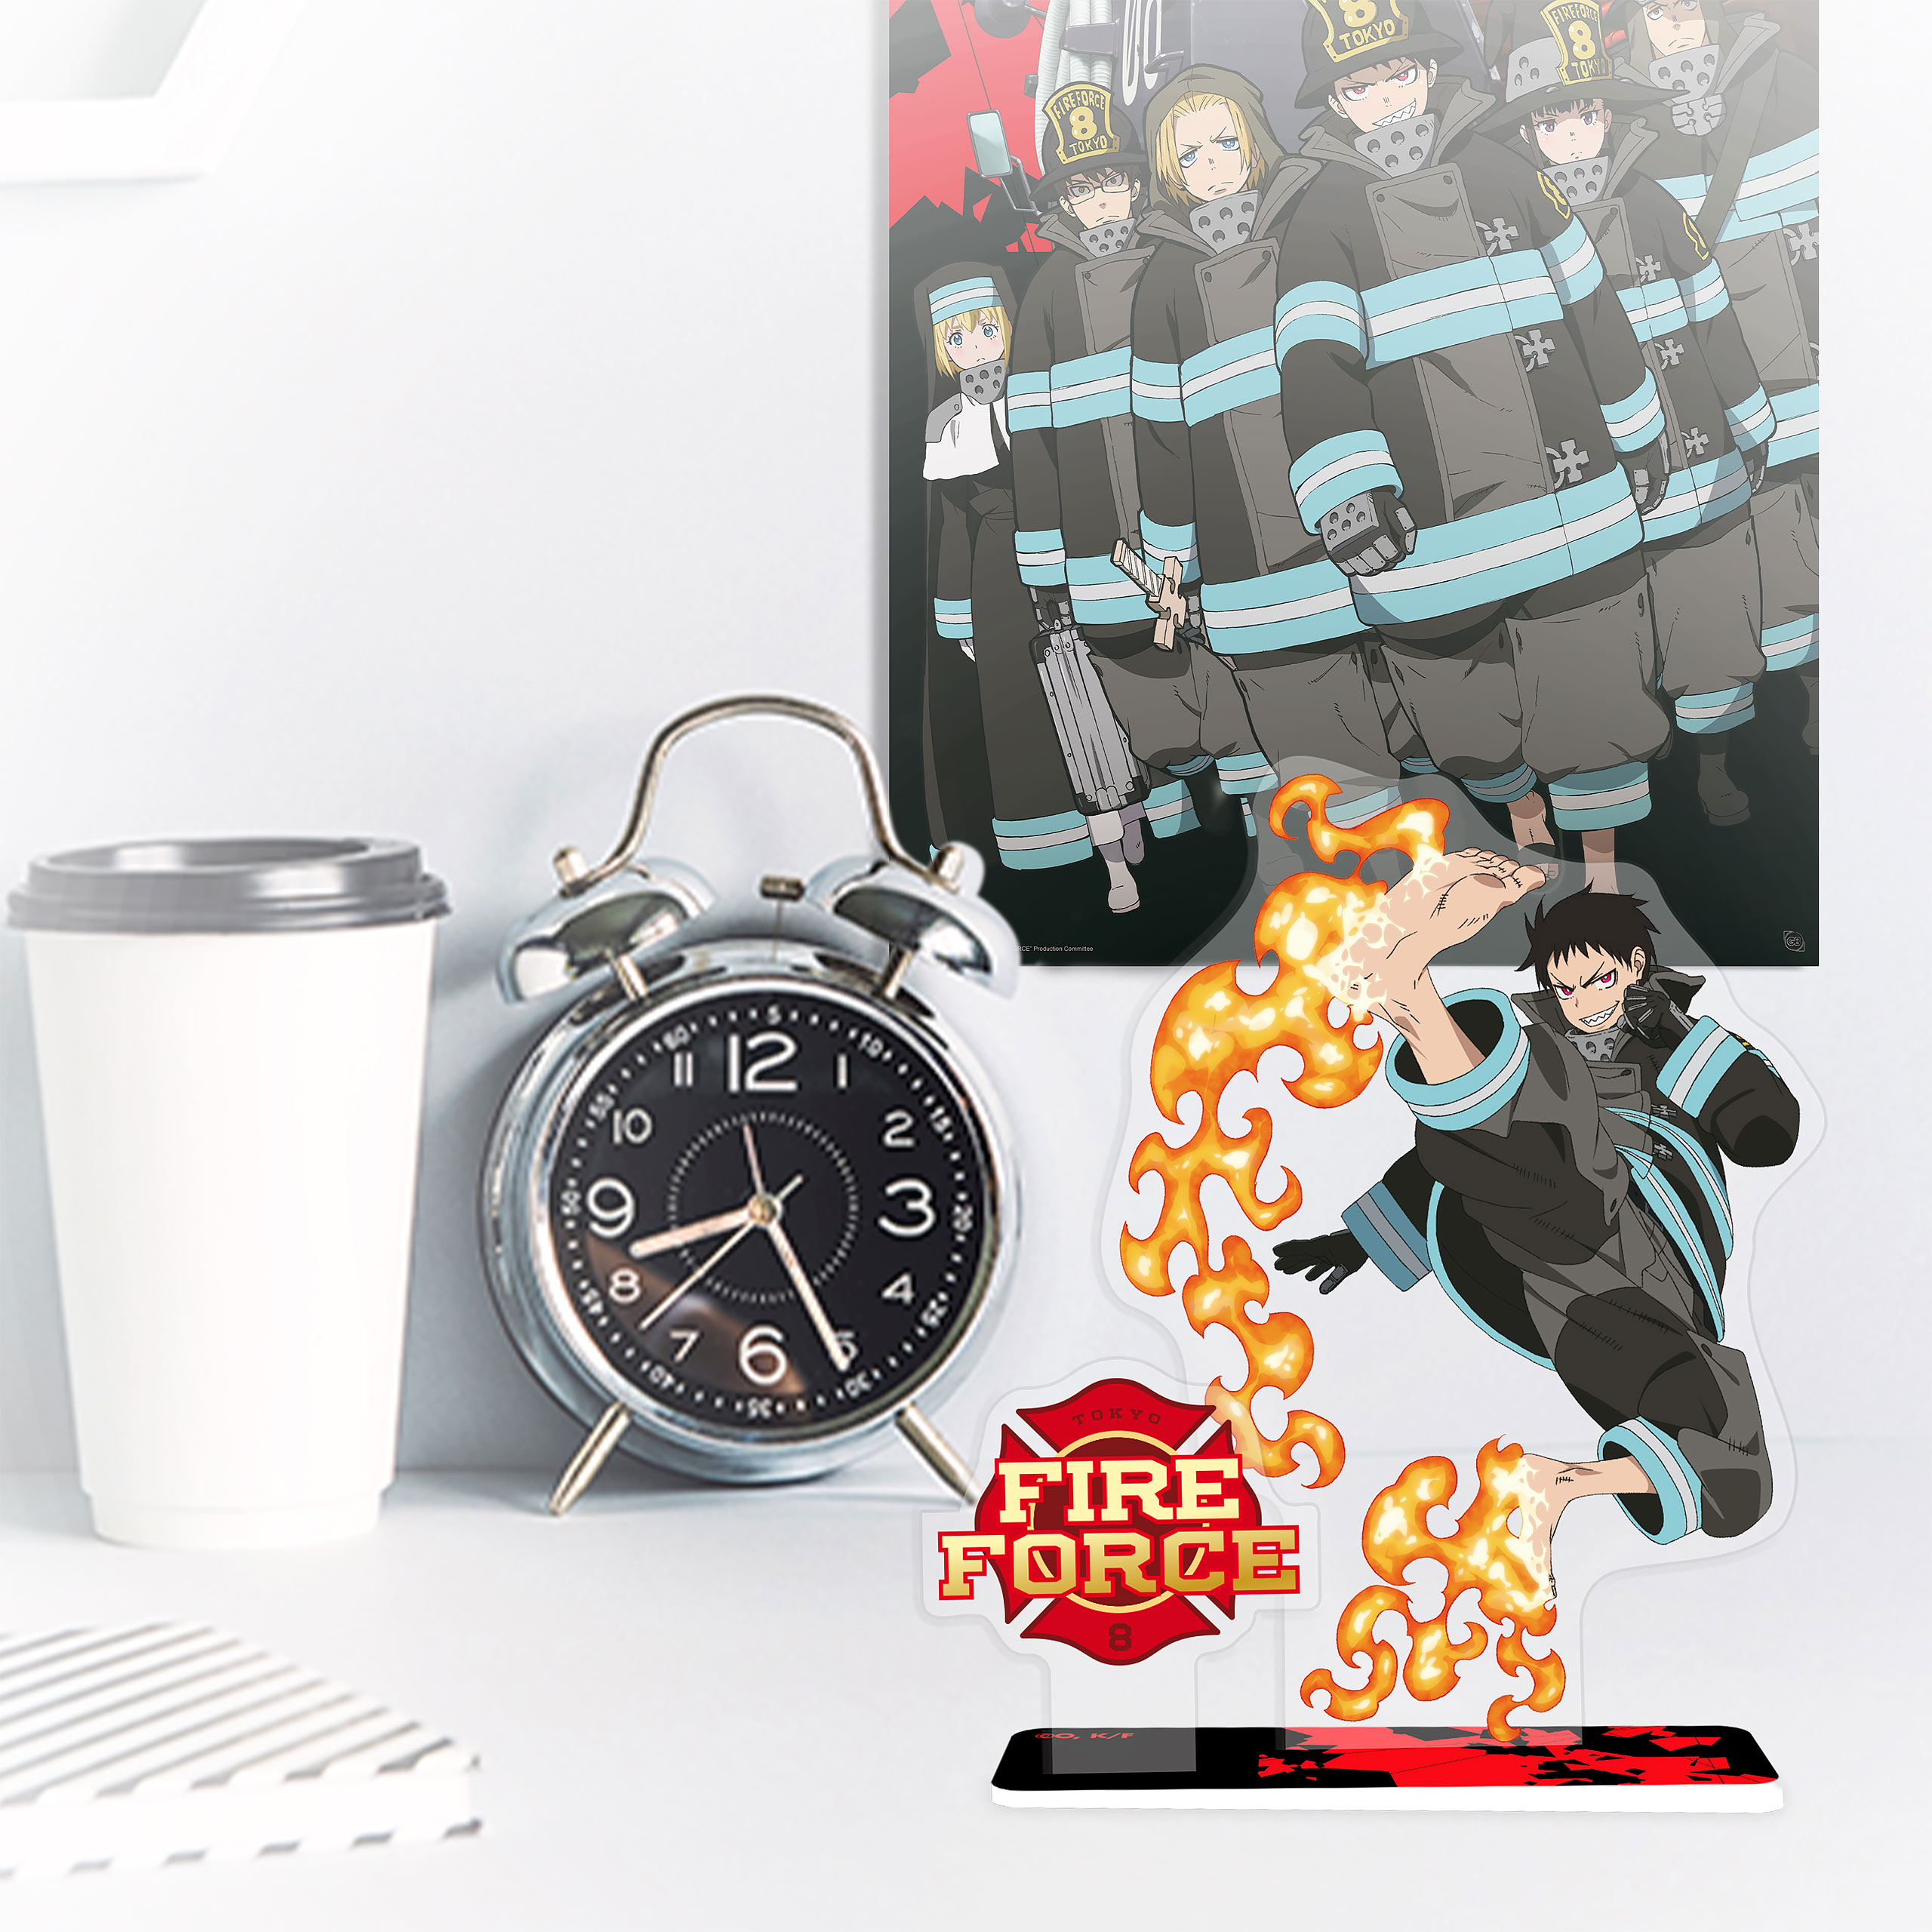 Fire Force - Shinra Acryl Figur